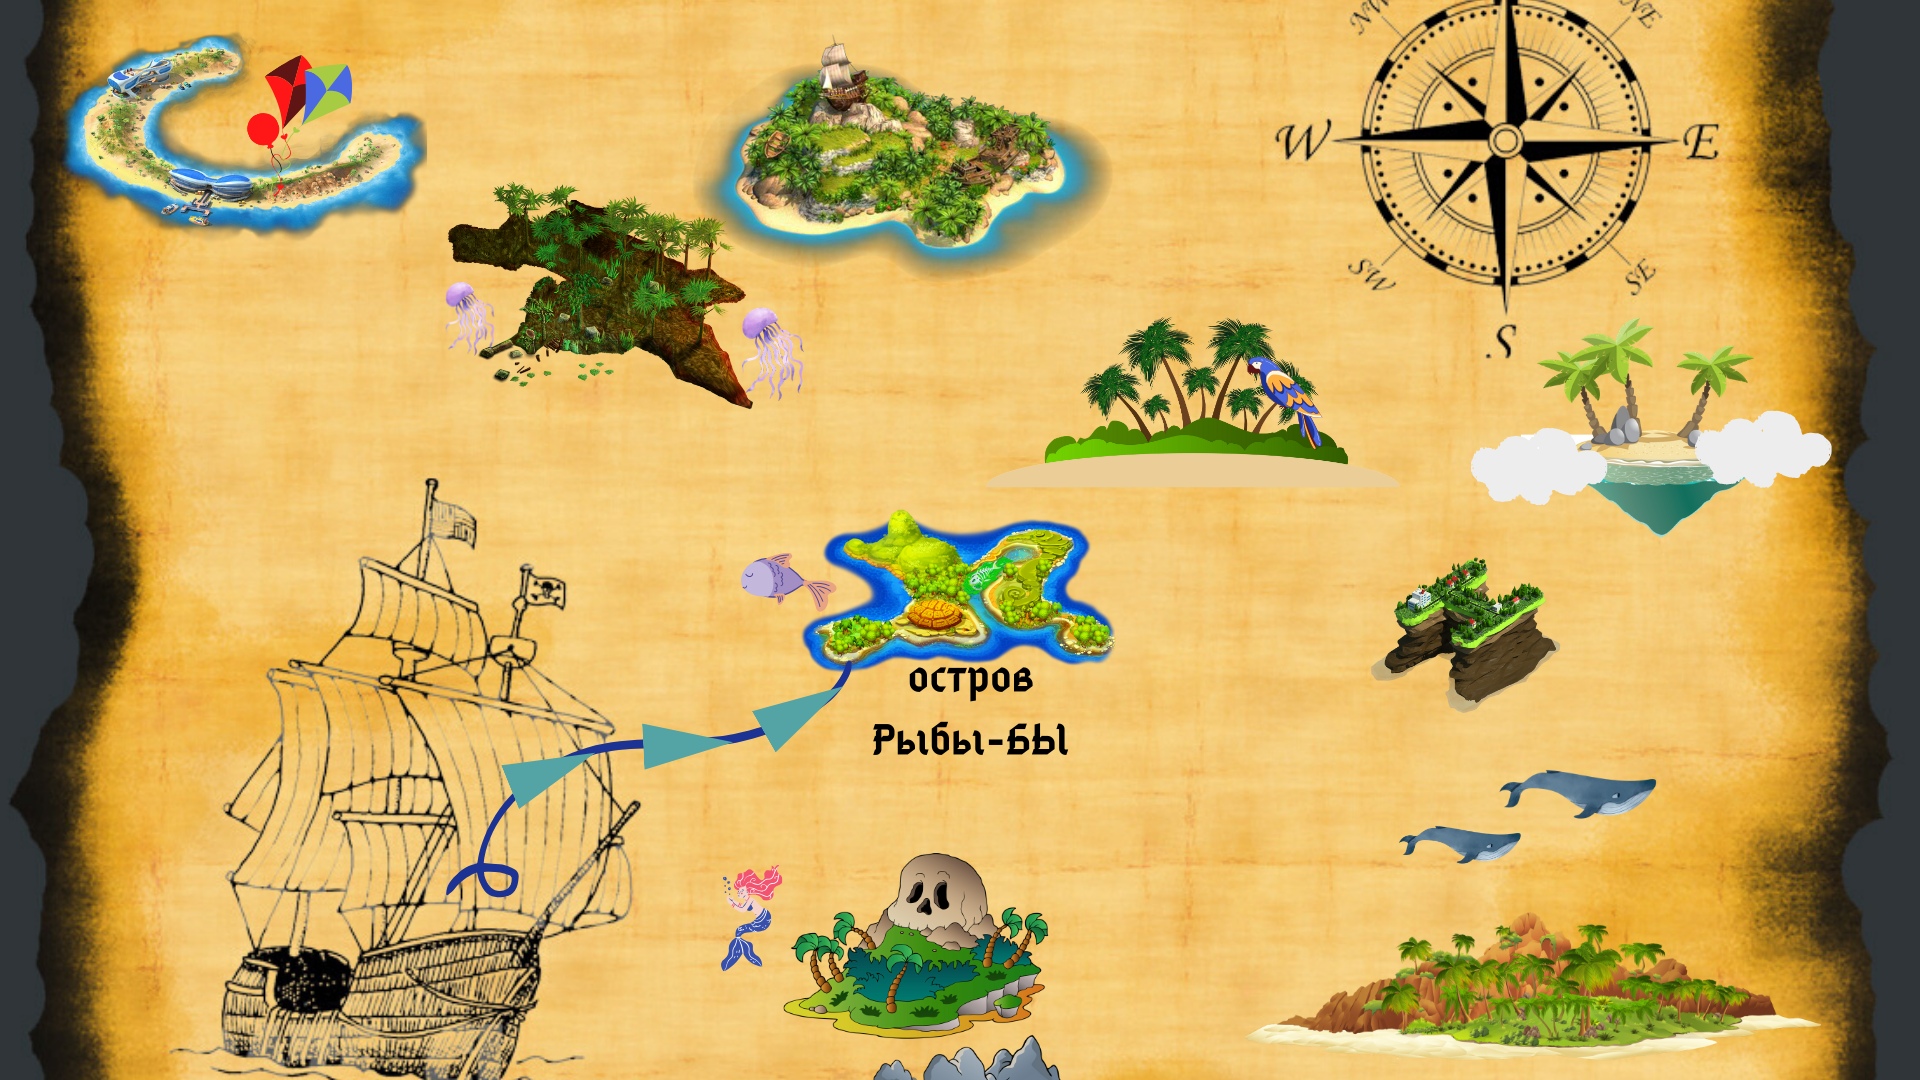 Картинка карты путешествие. Карта для игры путешествия. Карта путешествия для детей. Карта путешествия по островам для детей. Морская карта для детей.